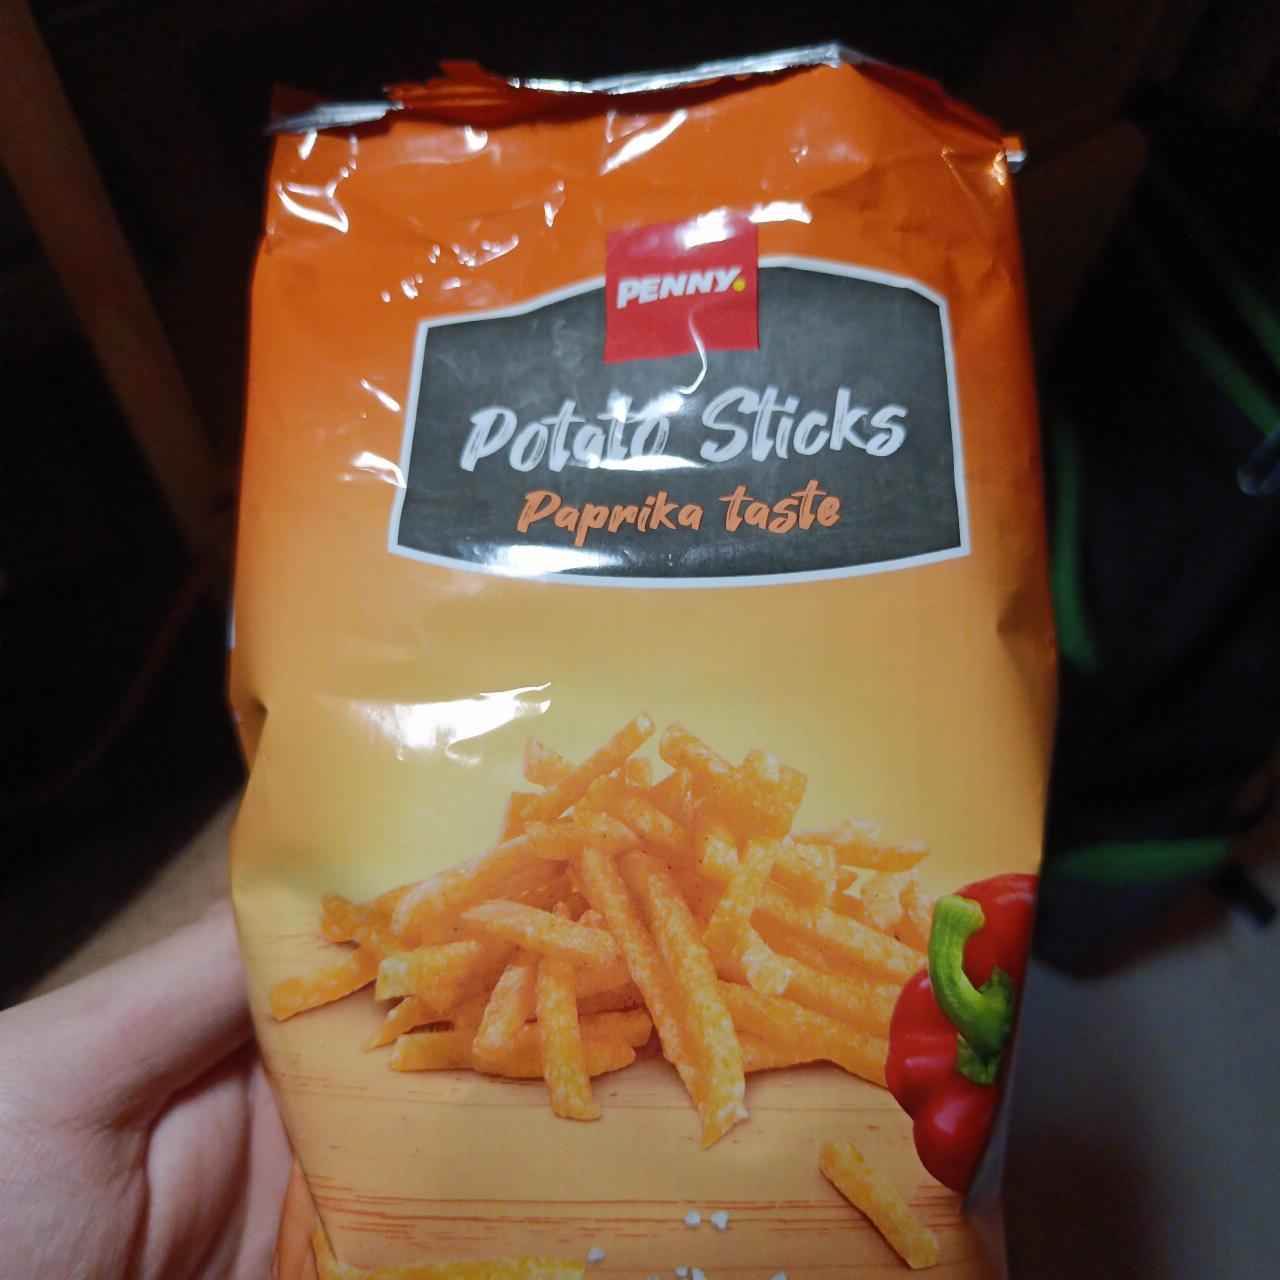 Fotografie - Potato Sticks Paprika taste Penny